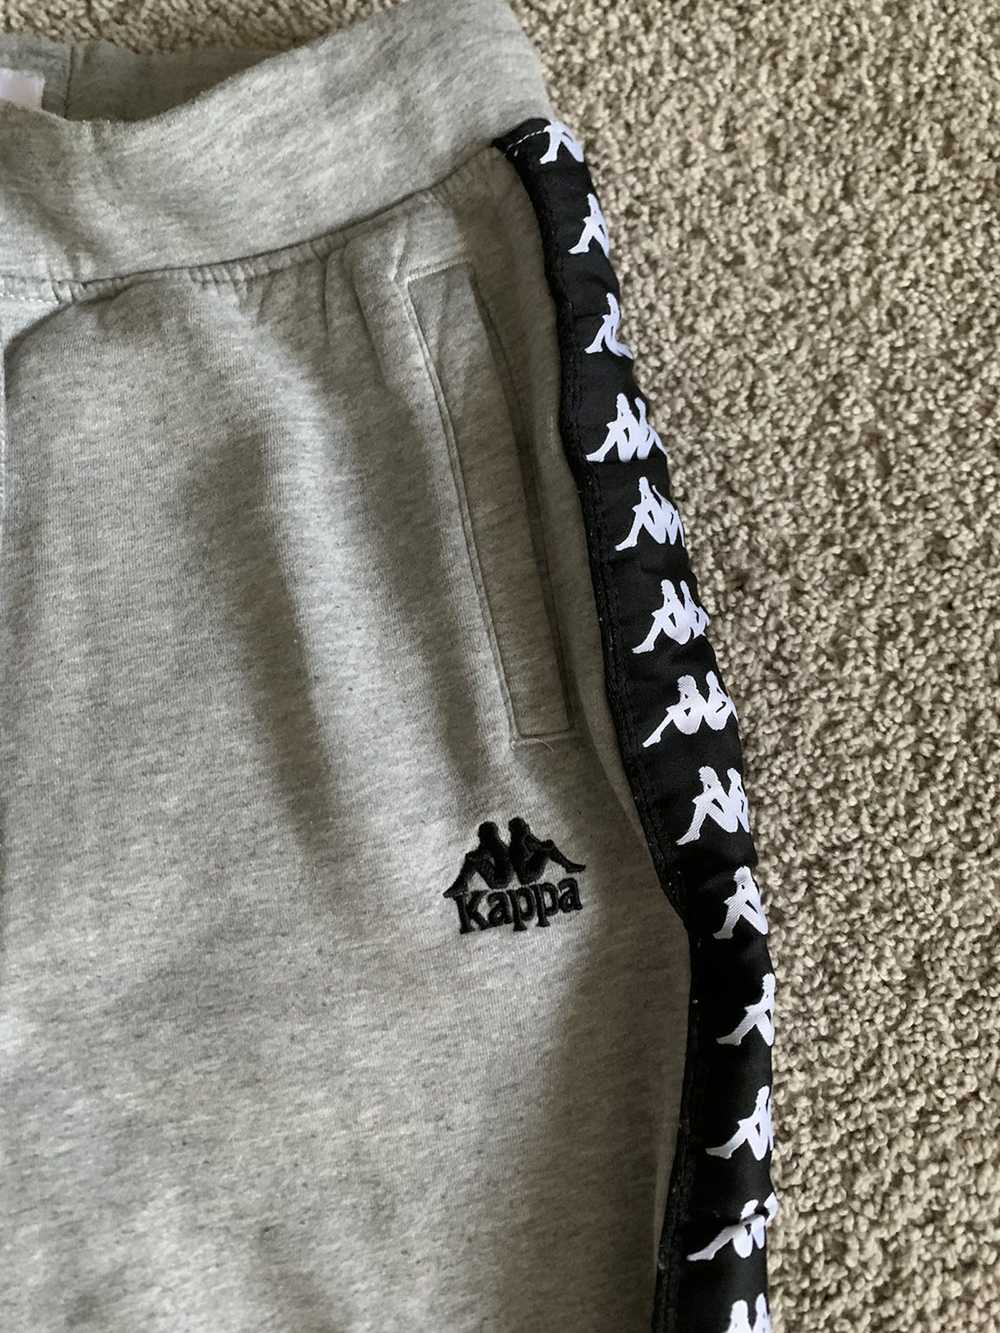 Kappa × Streetwear Kappa Sweatpants Size Large - image 3